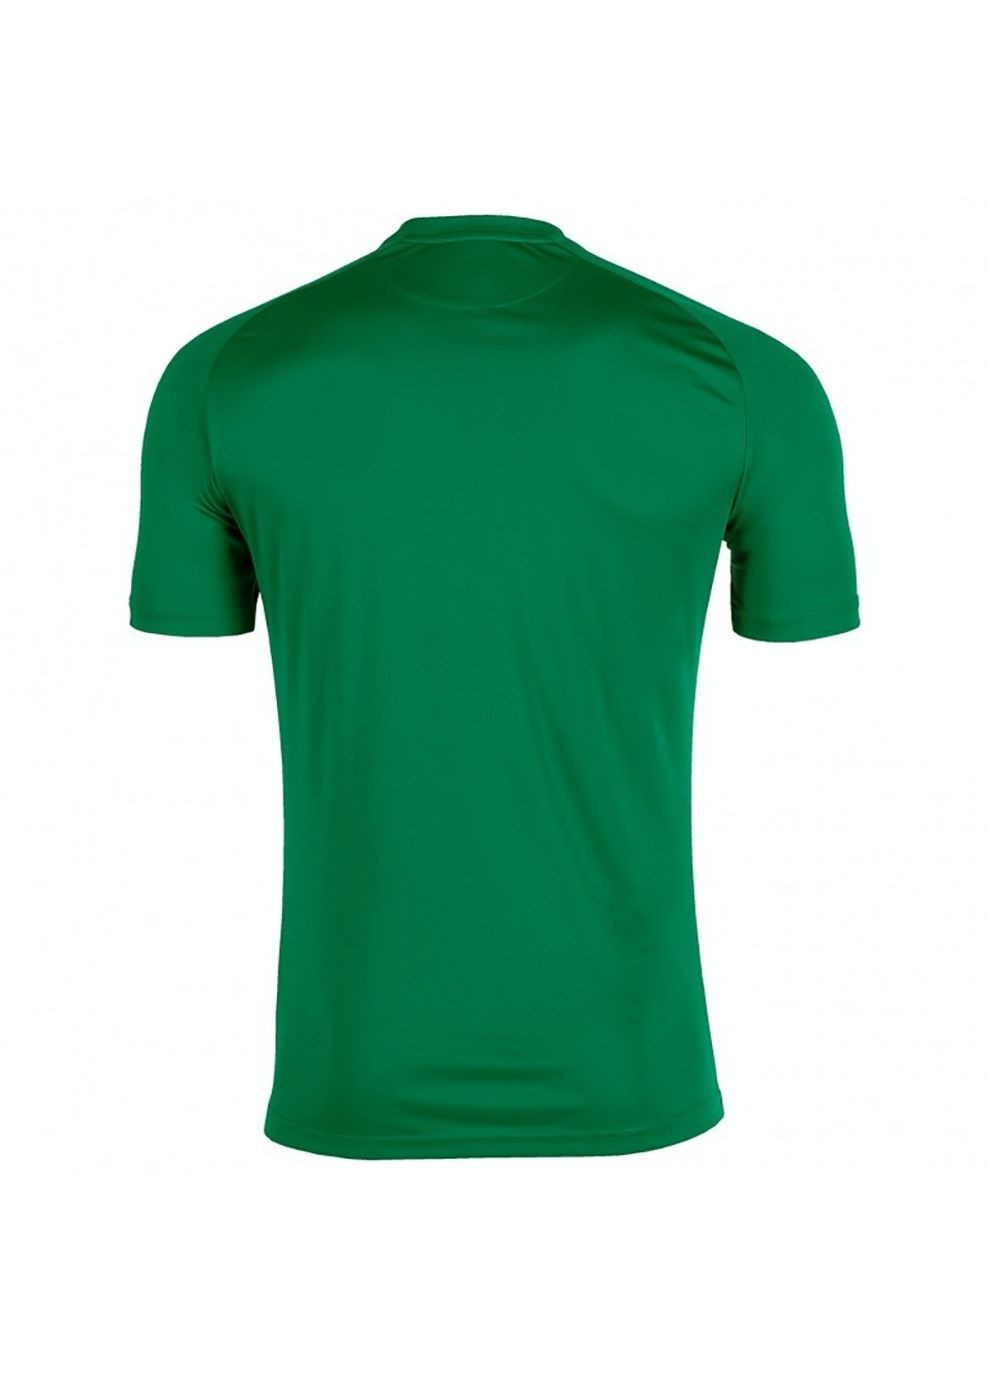 Зеленая демисезонная футболка tiger зеленый Joma